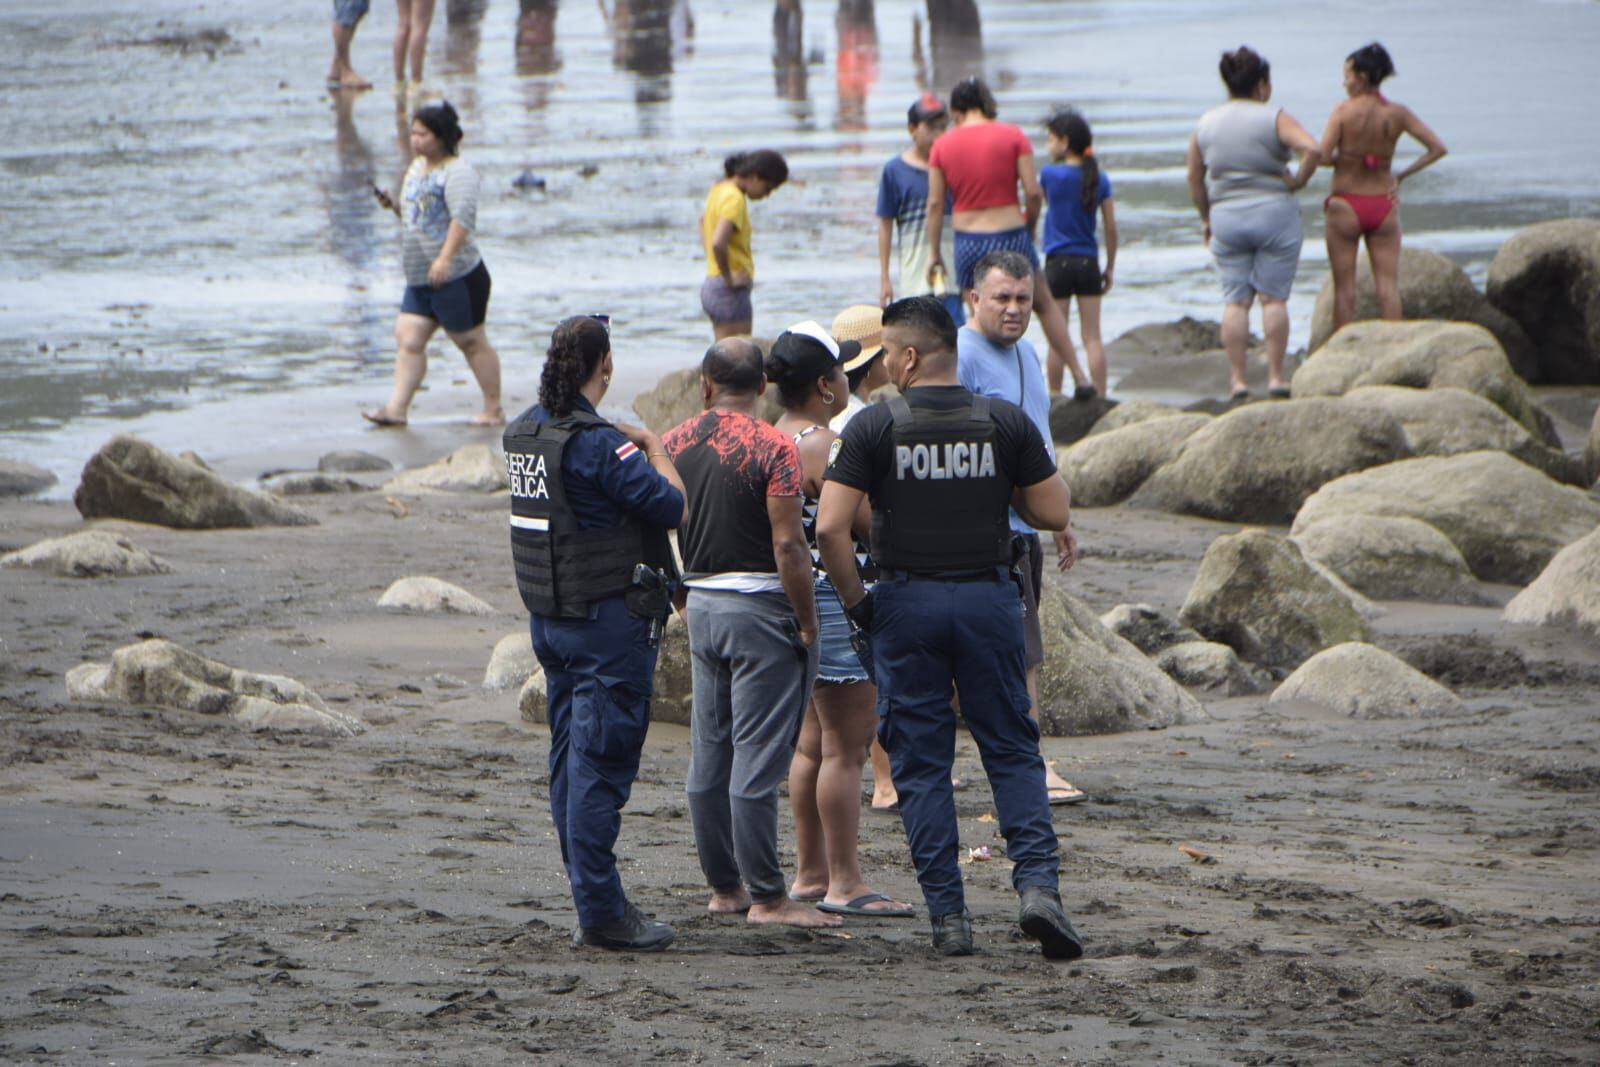 Dos jóvenes murieron ahogados en playa Caldera, este sábado. El OIJ se presentó al sitio para trasladar uno de los cuerpos encontrados a la Morgue Judicial. Foto: Andrés Garita.